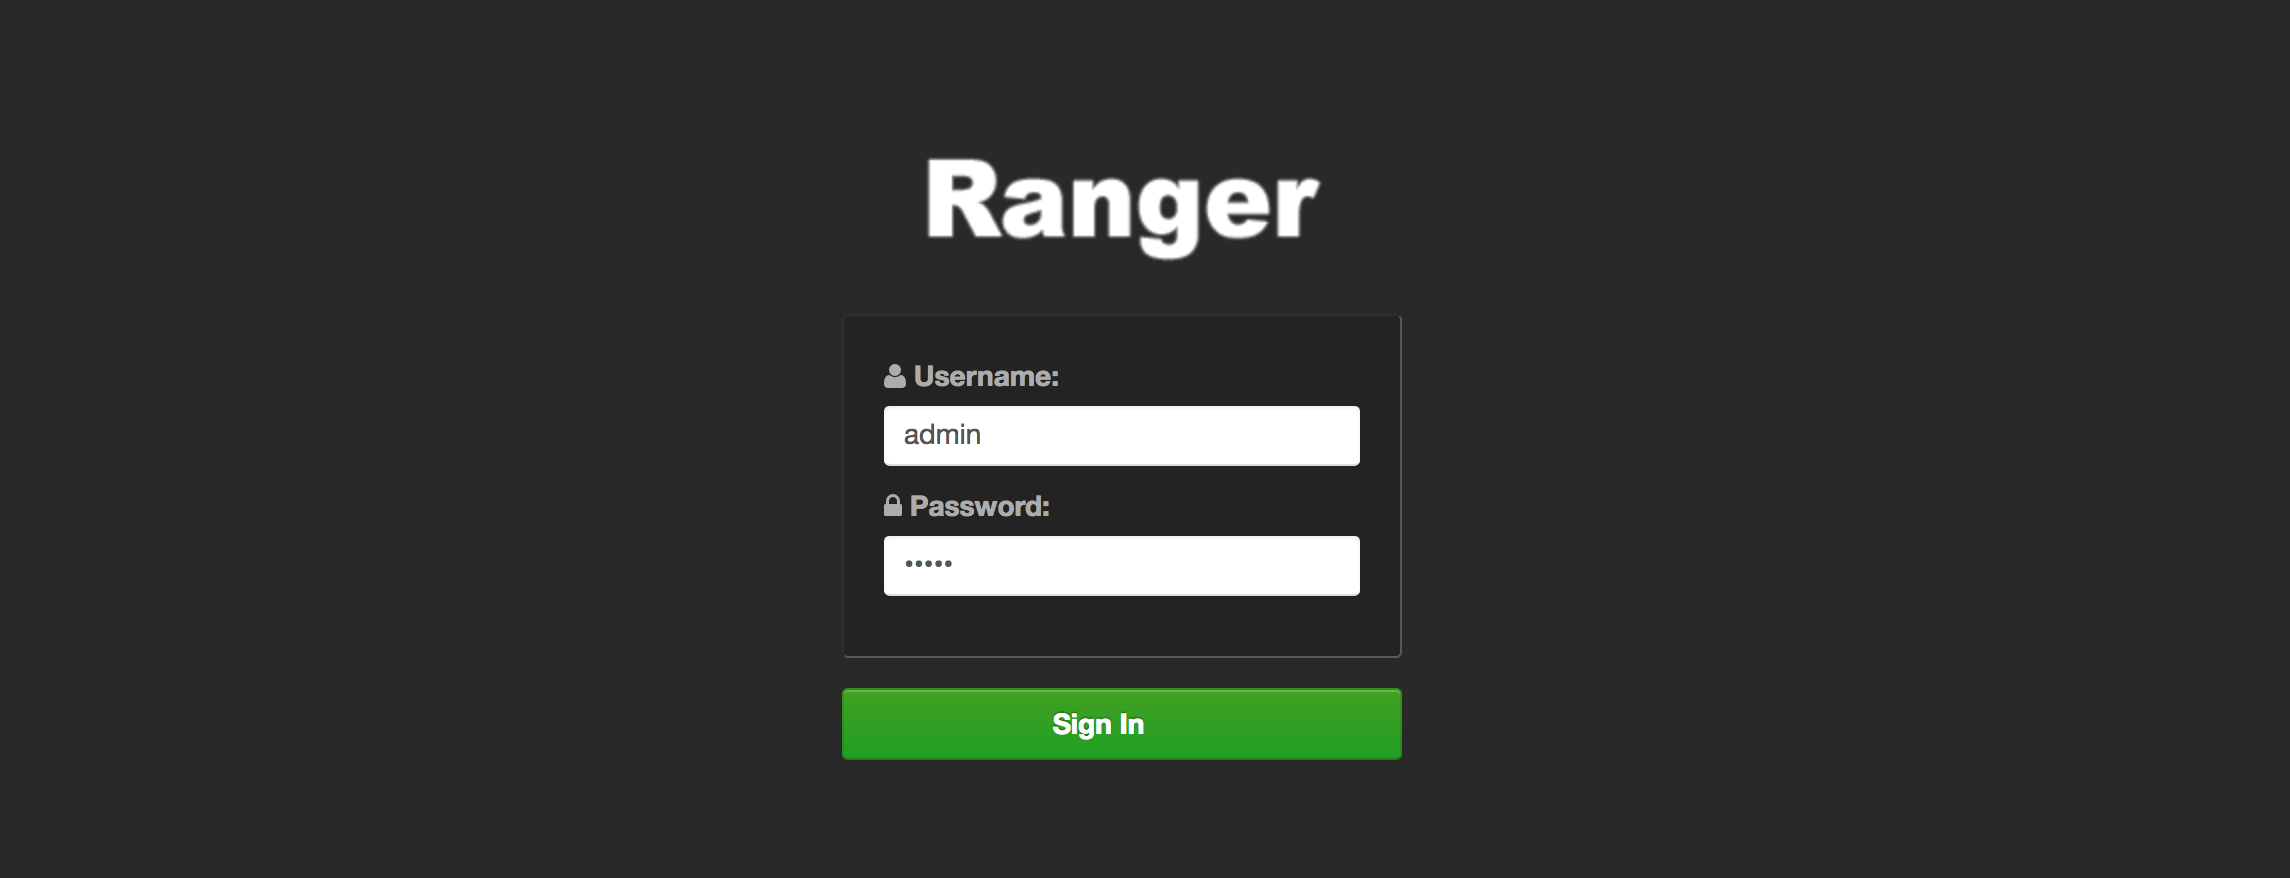 Ranger UI